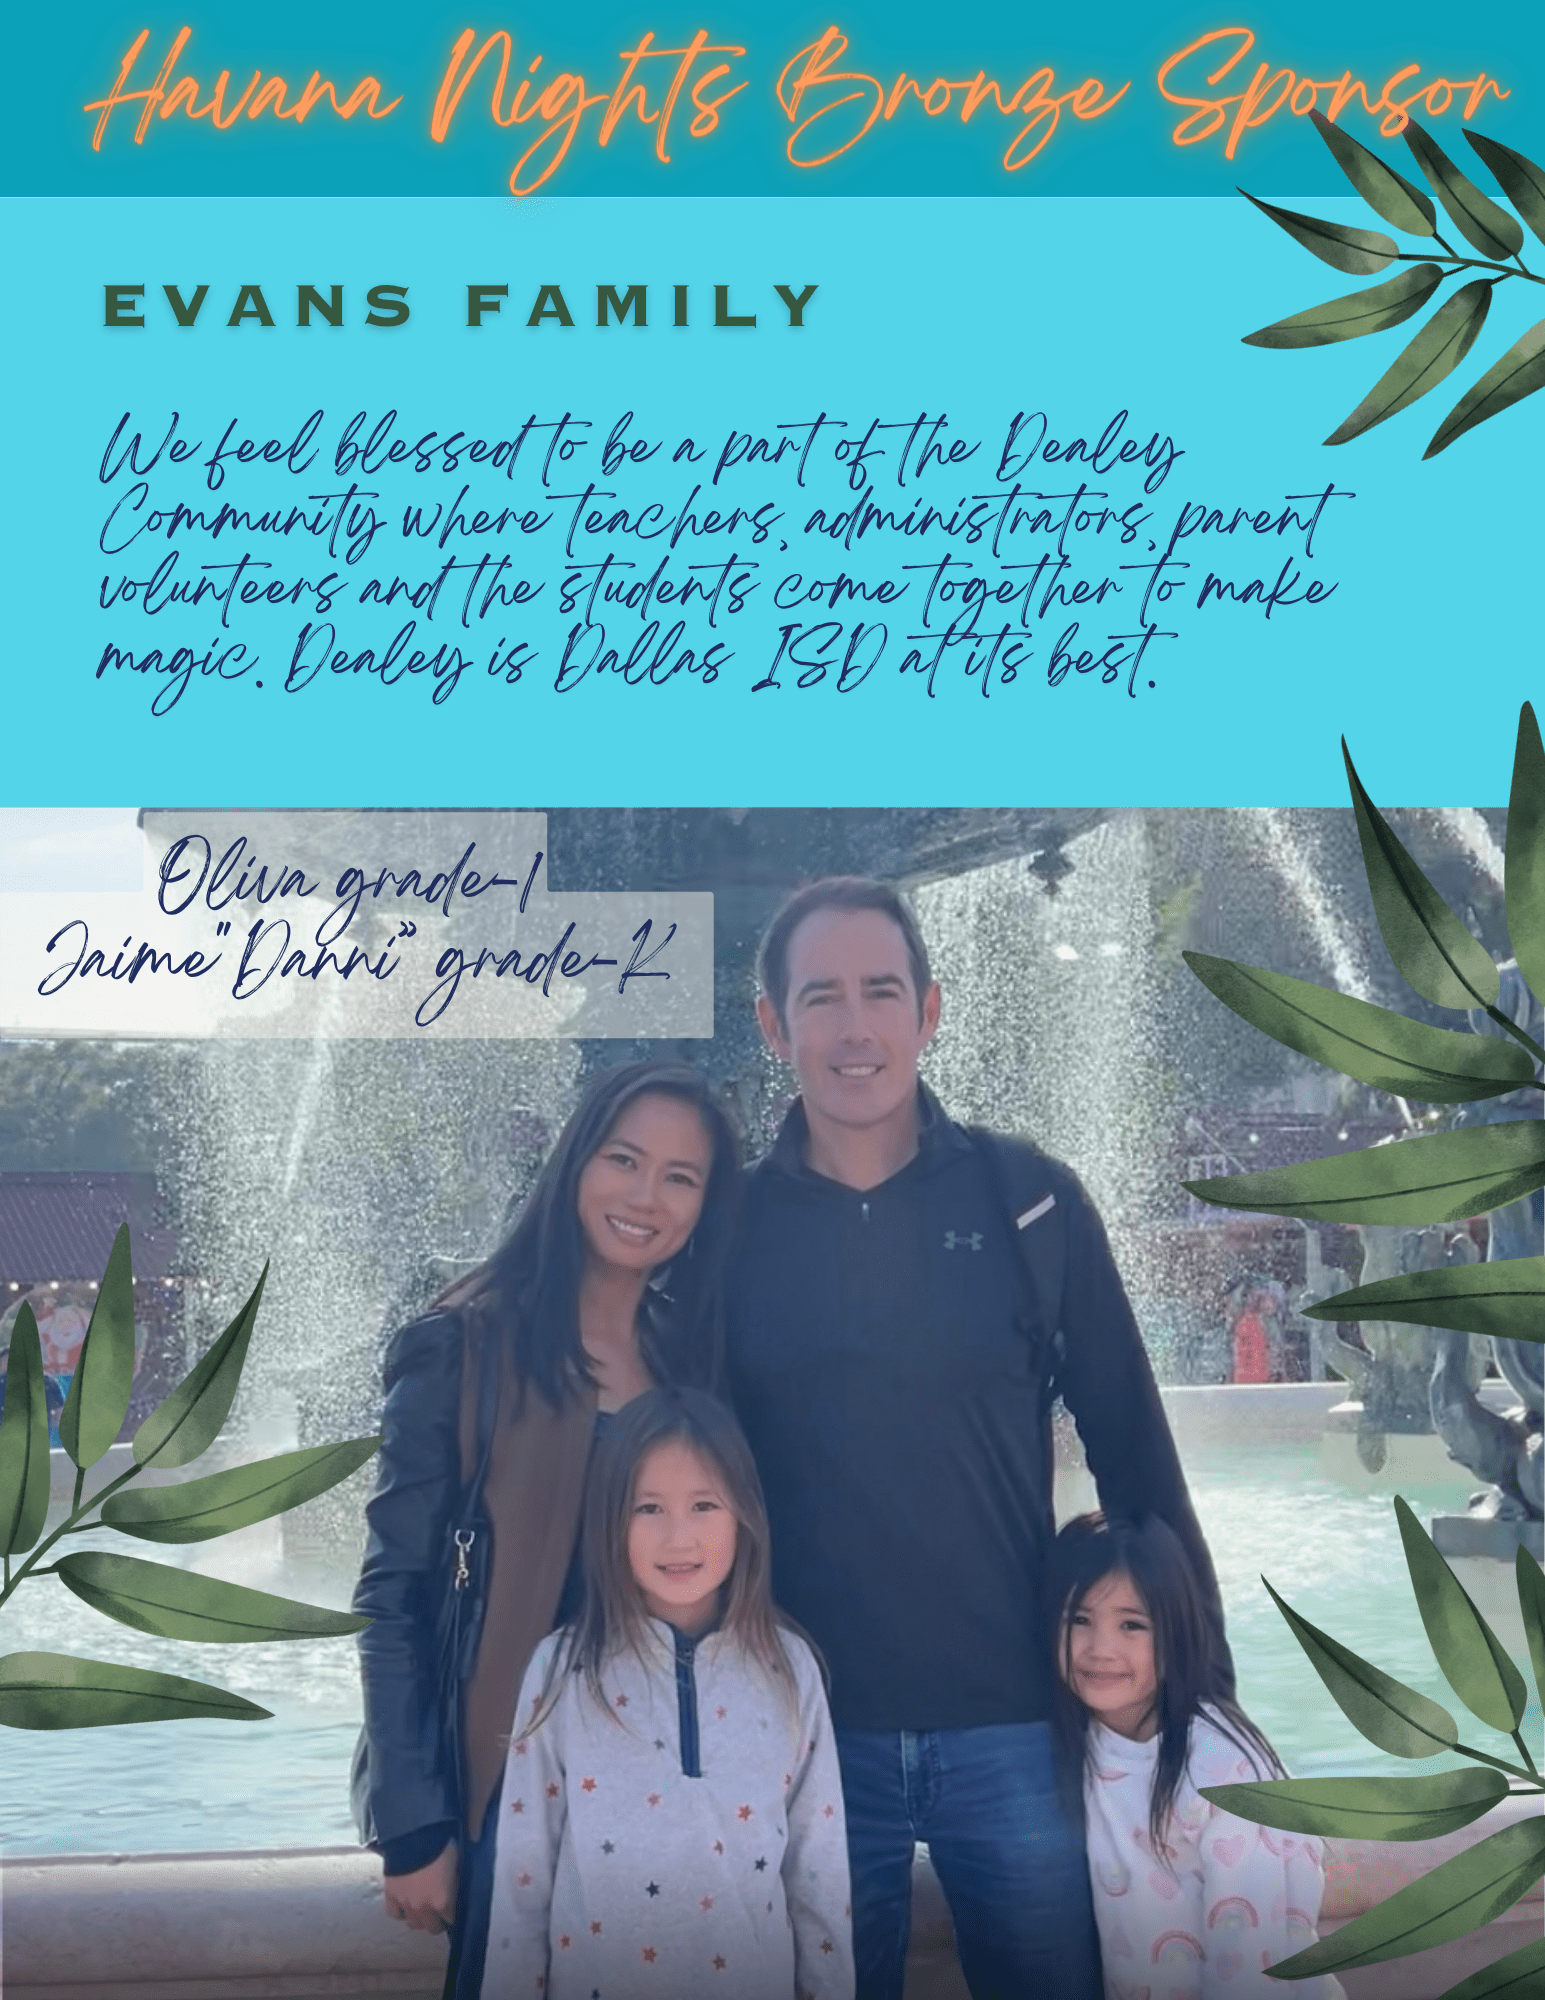 Sponsor - bronze - Evans family